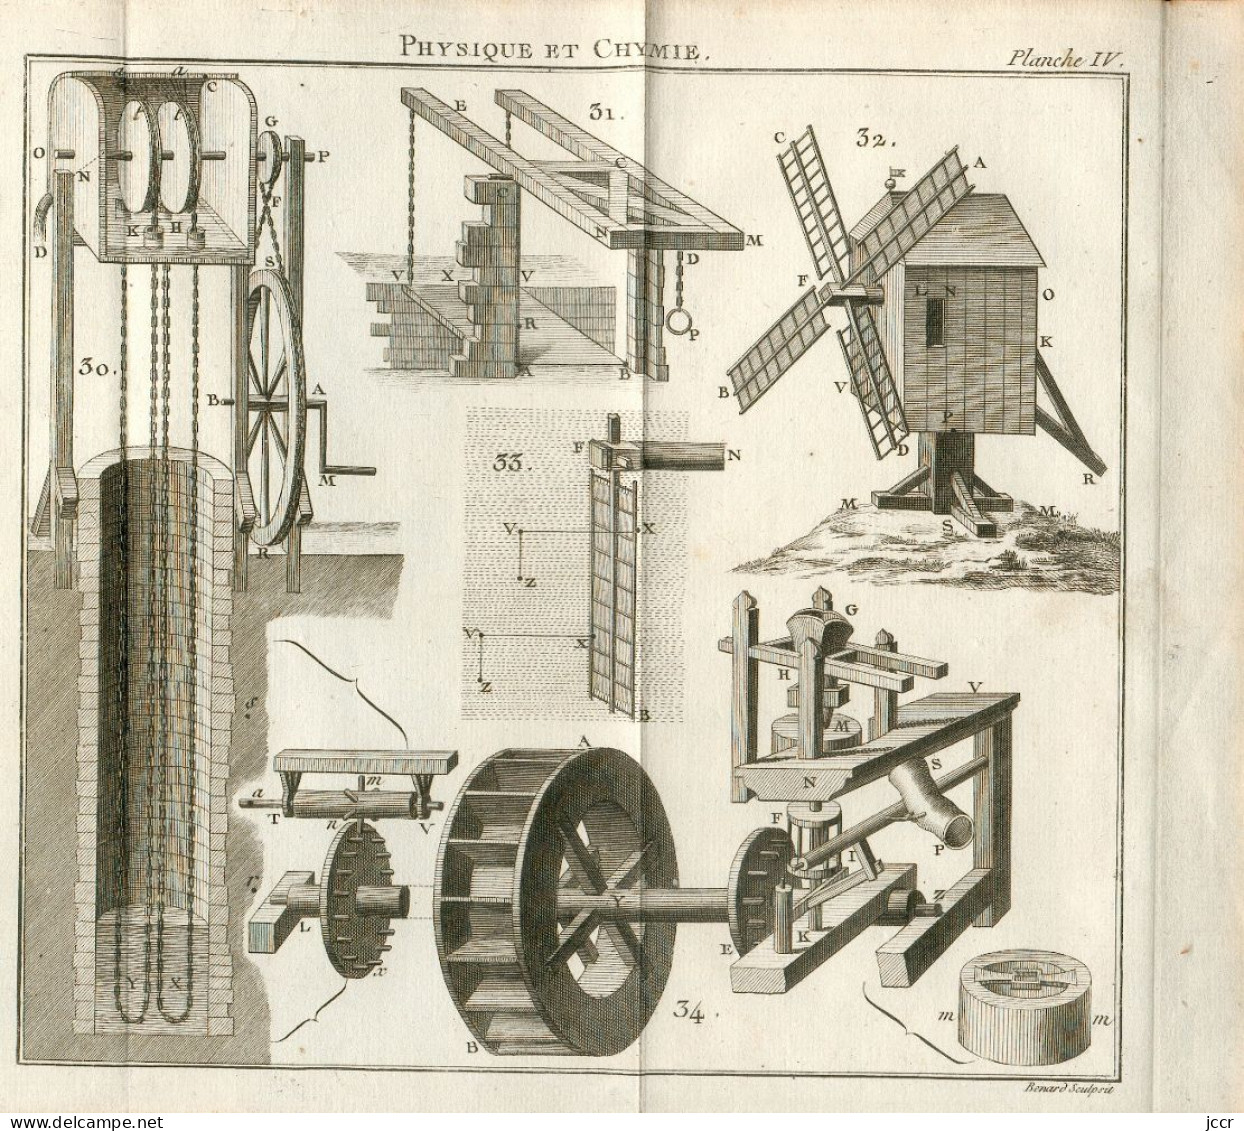 Théorie des Nouvelles Découvertes en genre de Physique et de Chymie par M. l'Abbé Para - 10 planches dépliantes - 1786